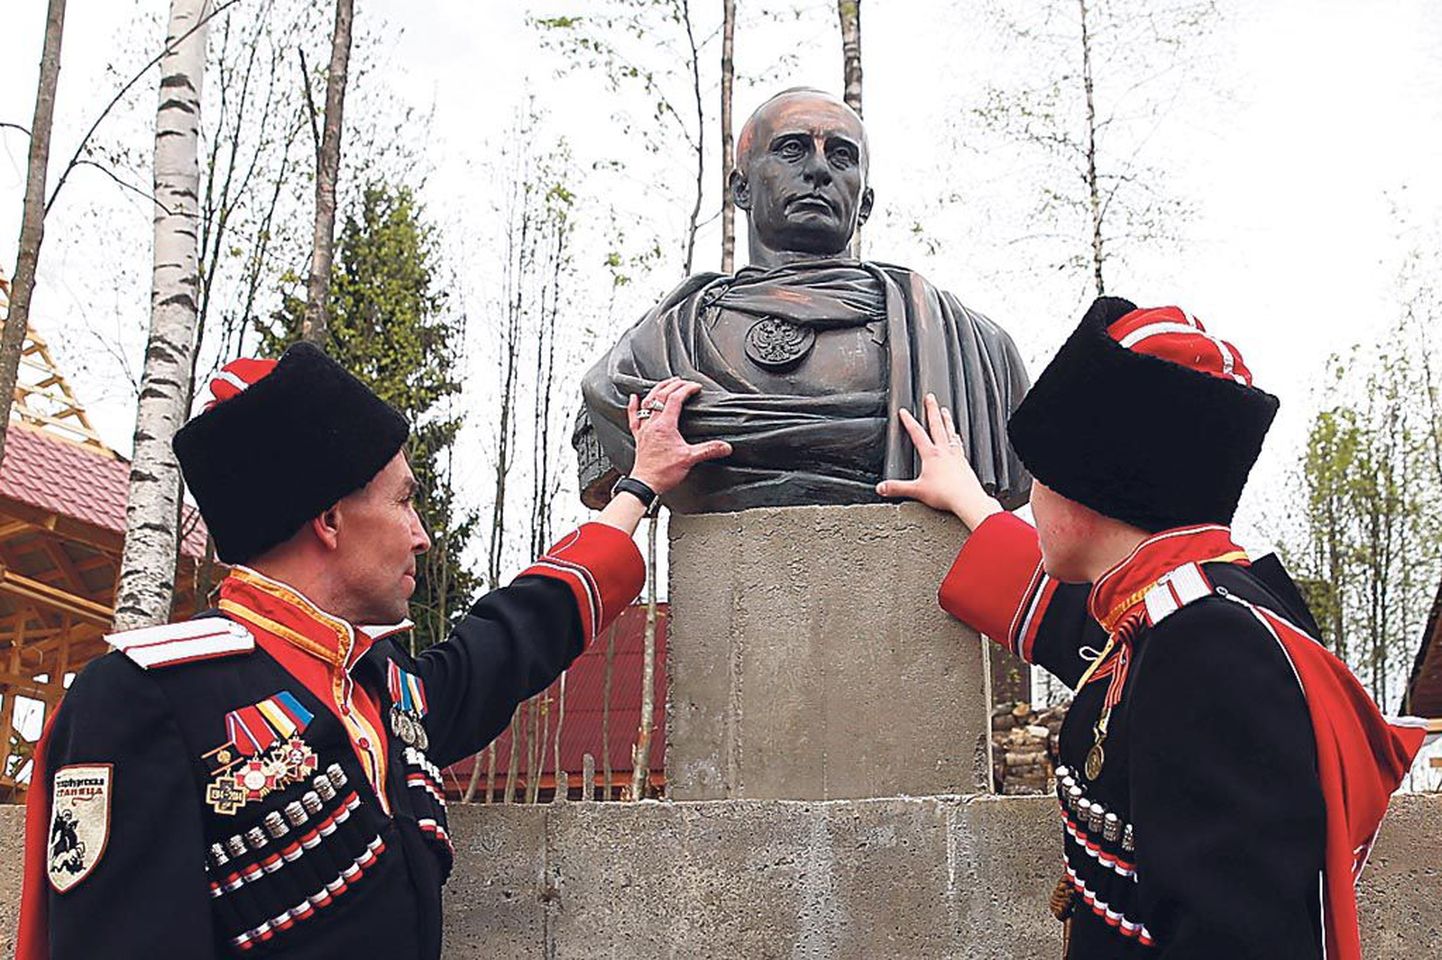 Leningradi oblastis avati Vladimir Putini büst, kus teda kujutatakse Rooma keisrina.